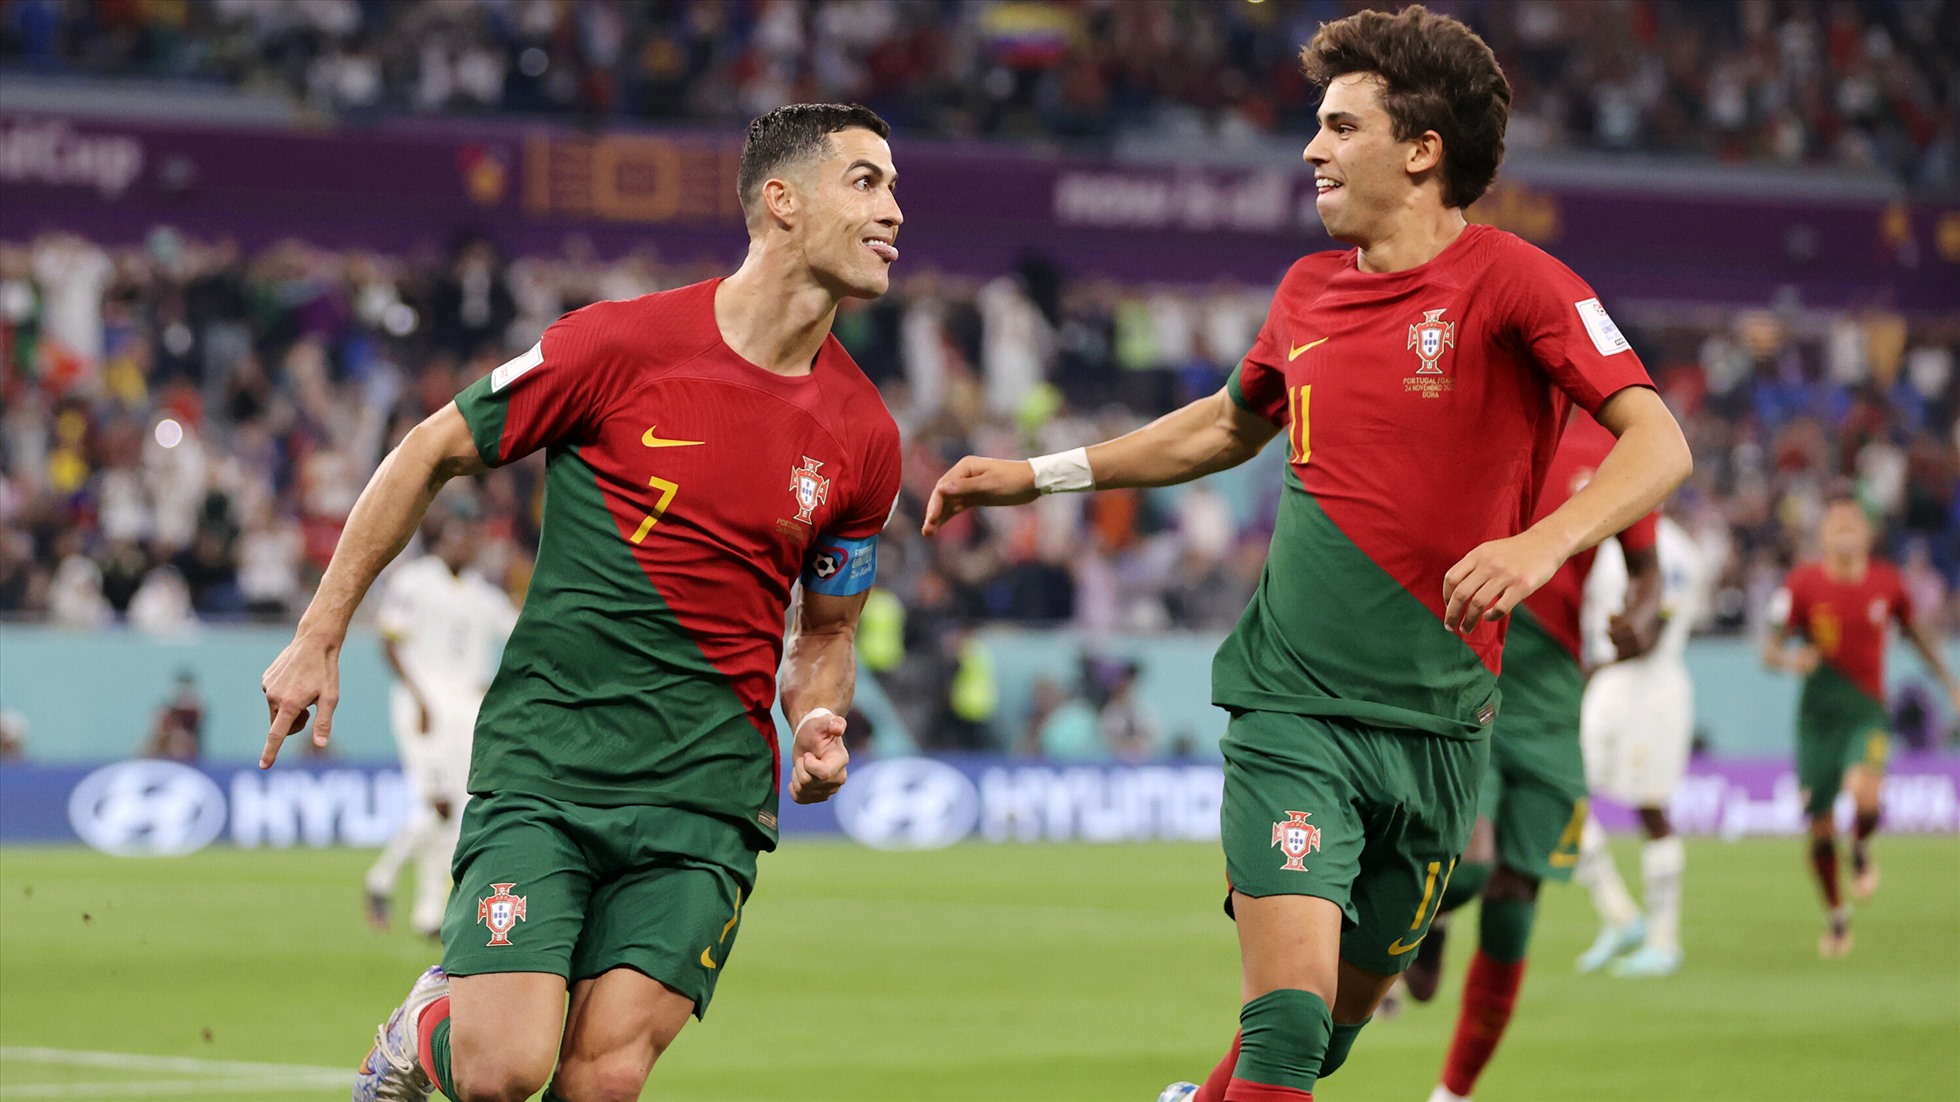 Cristiano Ronaldo, Bồ Đào Nha, Thụy Sĩ: Hãy tận hưởng niềm vui của những khoảnh khắc đẹp nhất của siêu sao Cristiano Ronaldo trong trận đấu giữa ĐT Bồ Đào Nha và Thụy Sĩ. Đây là một trận đấu hấp dẫn không thể bỏ qua của những cầu thủ tài năng nhất thế giới.